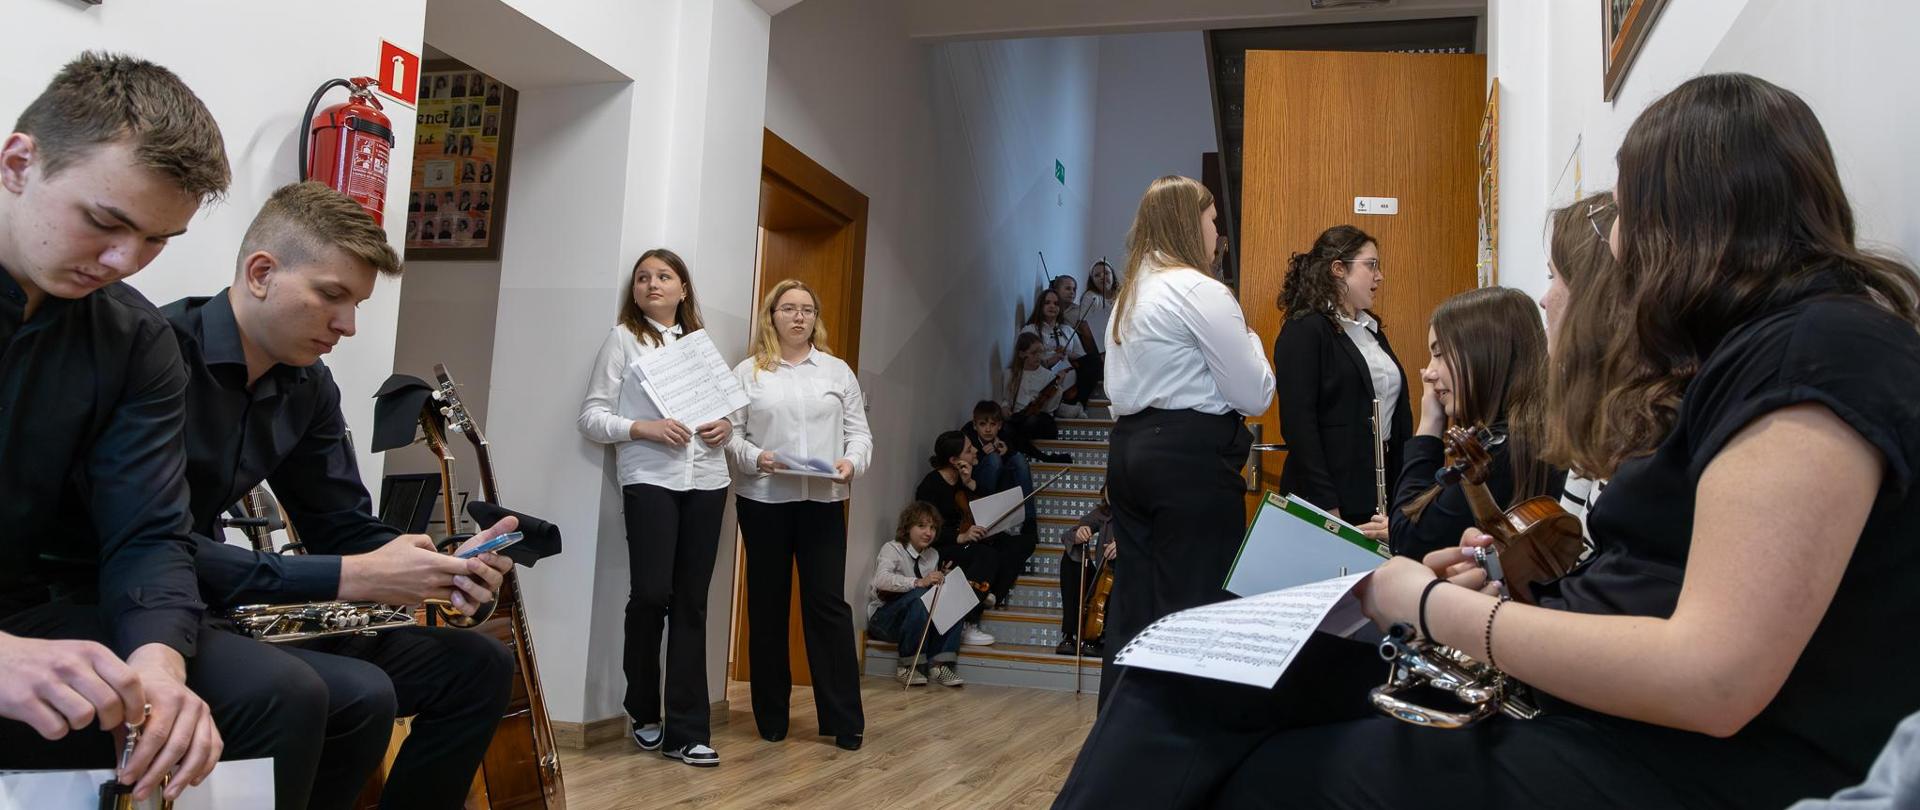 XVIII Szkolny Konkurs Zespołów Kameralnych. Uczestnicy konkursu na korytarzu przed aulą oczekują na swoje prezentacje.